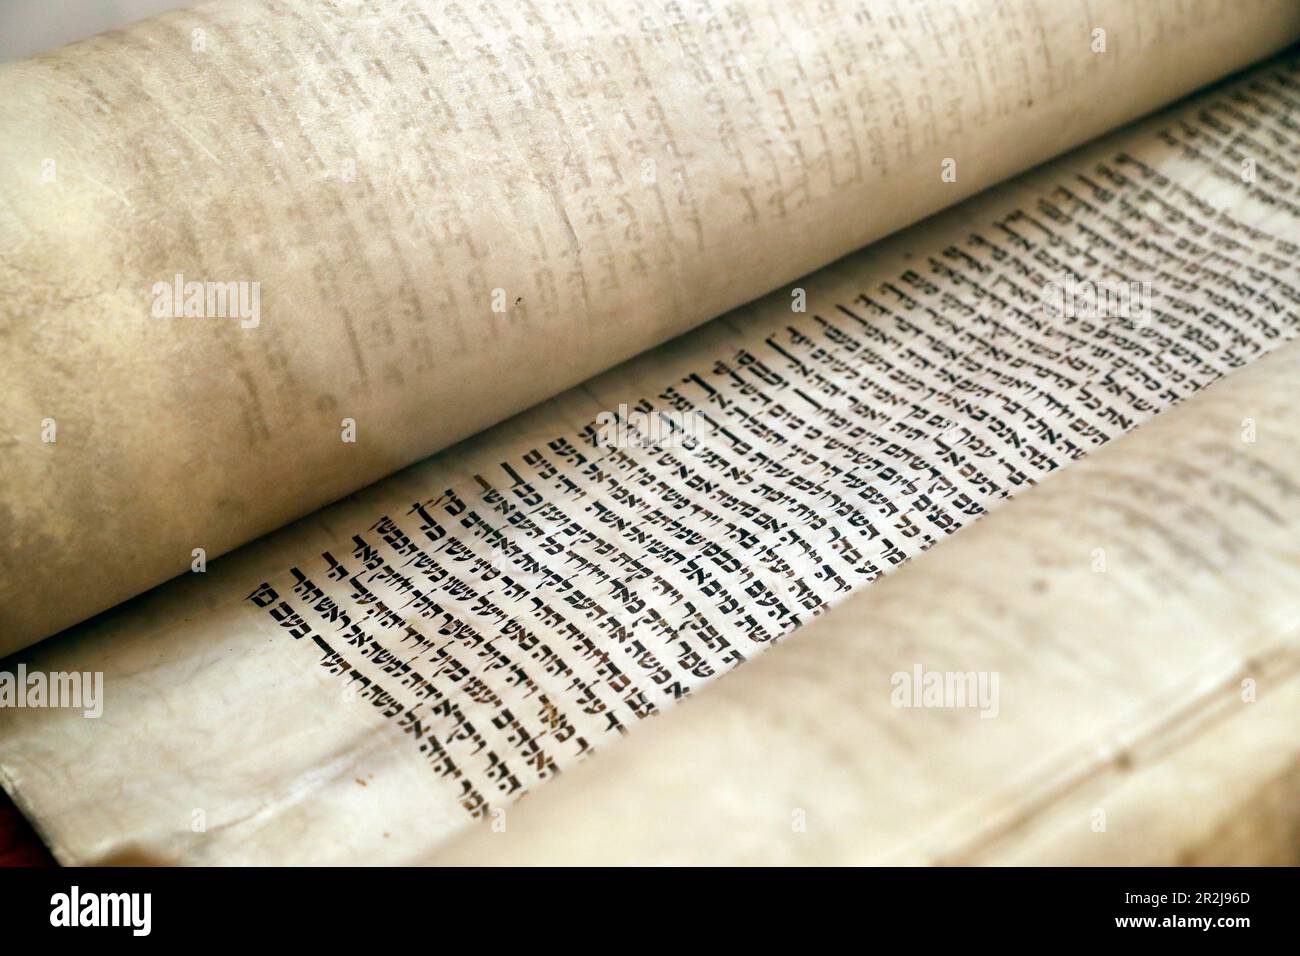 Nahaufnahme des traditionellen alten Torah-Scrollbuchs, des Jewish Museum of Florida, Miami Beach, Florida, Vereinigte Staaten von Amerika, Nordamerika Stockfoto